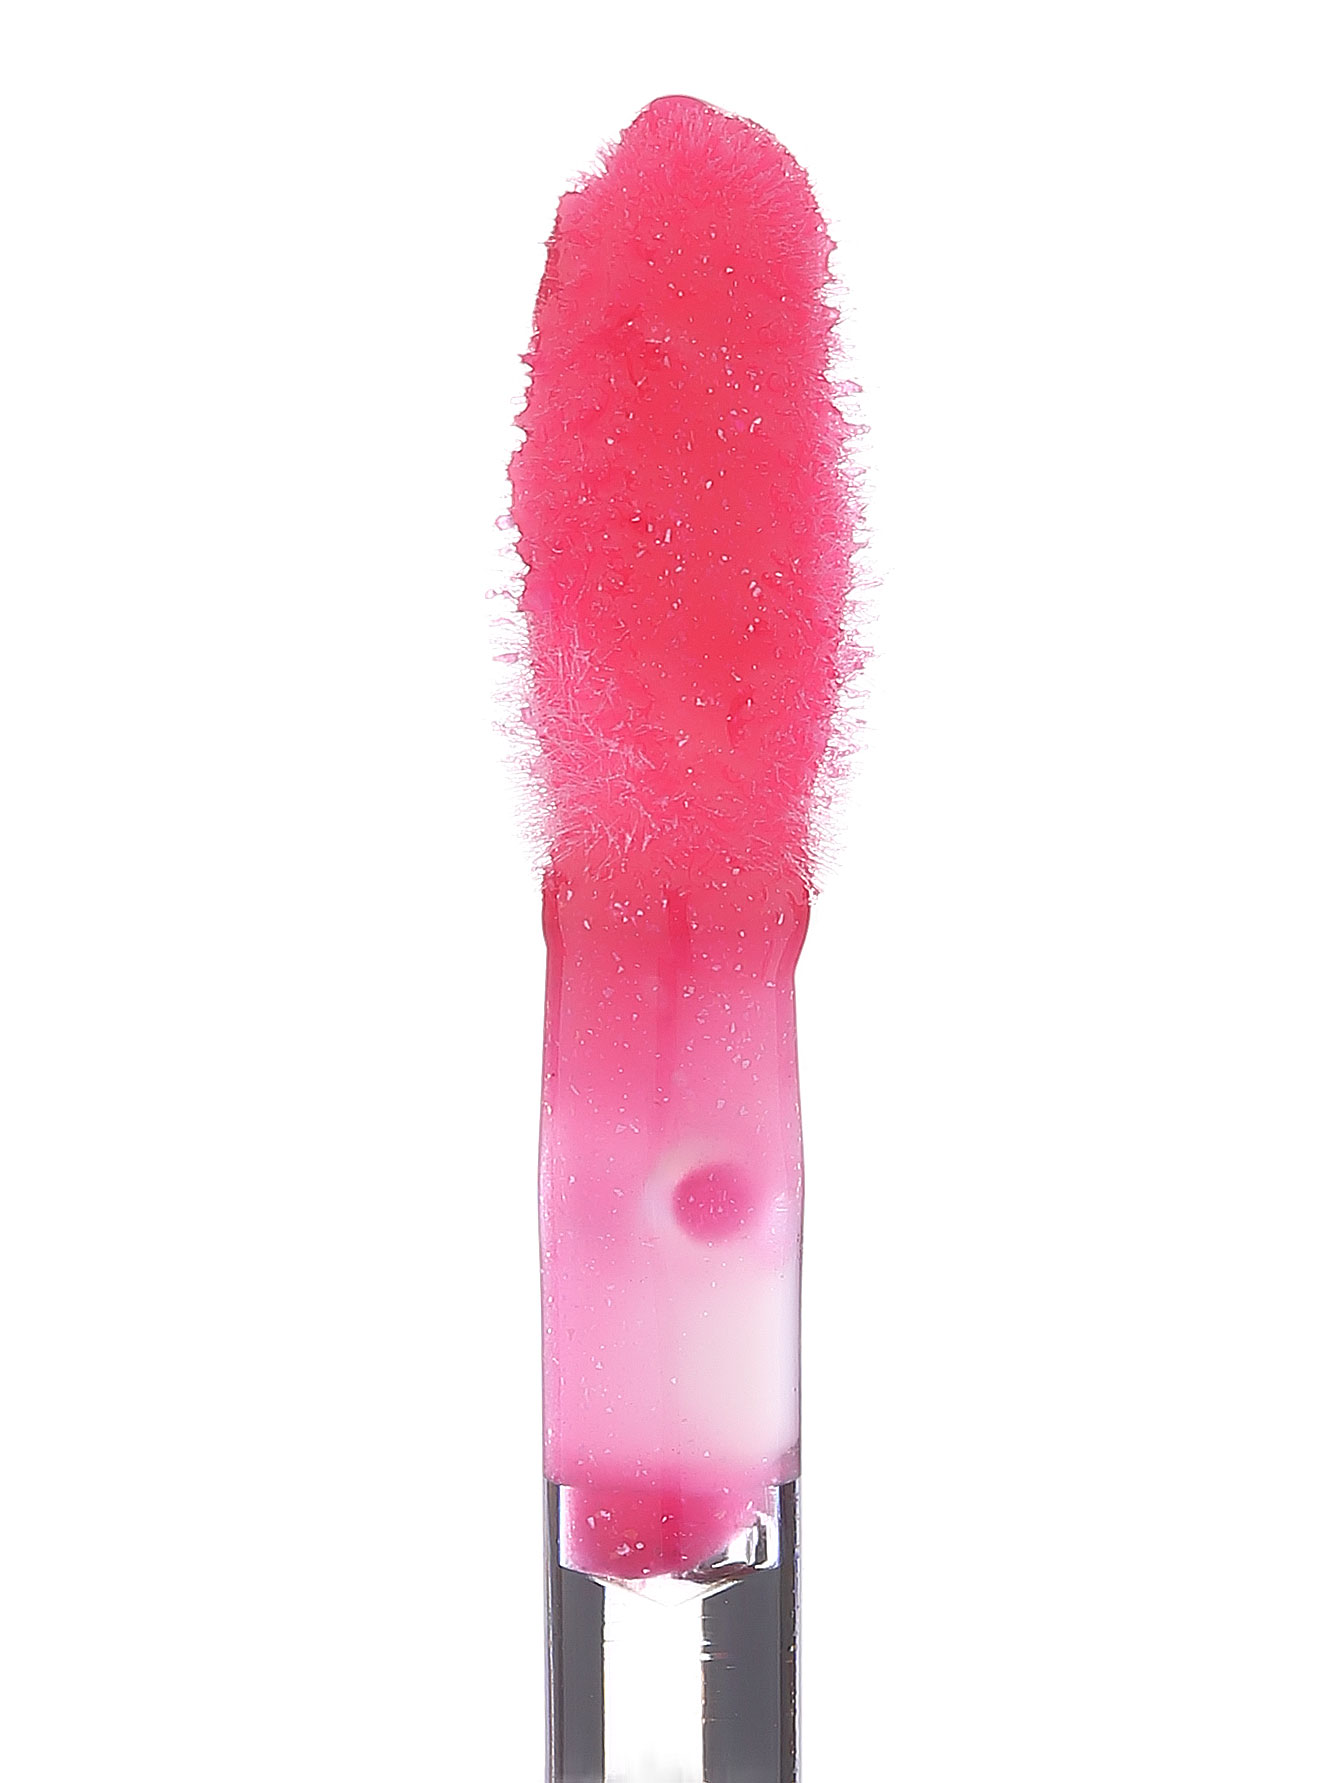  Блеск для губ - №240 Passionate Fuchsia, Pure Color Gloss - Модель Верх-Низ